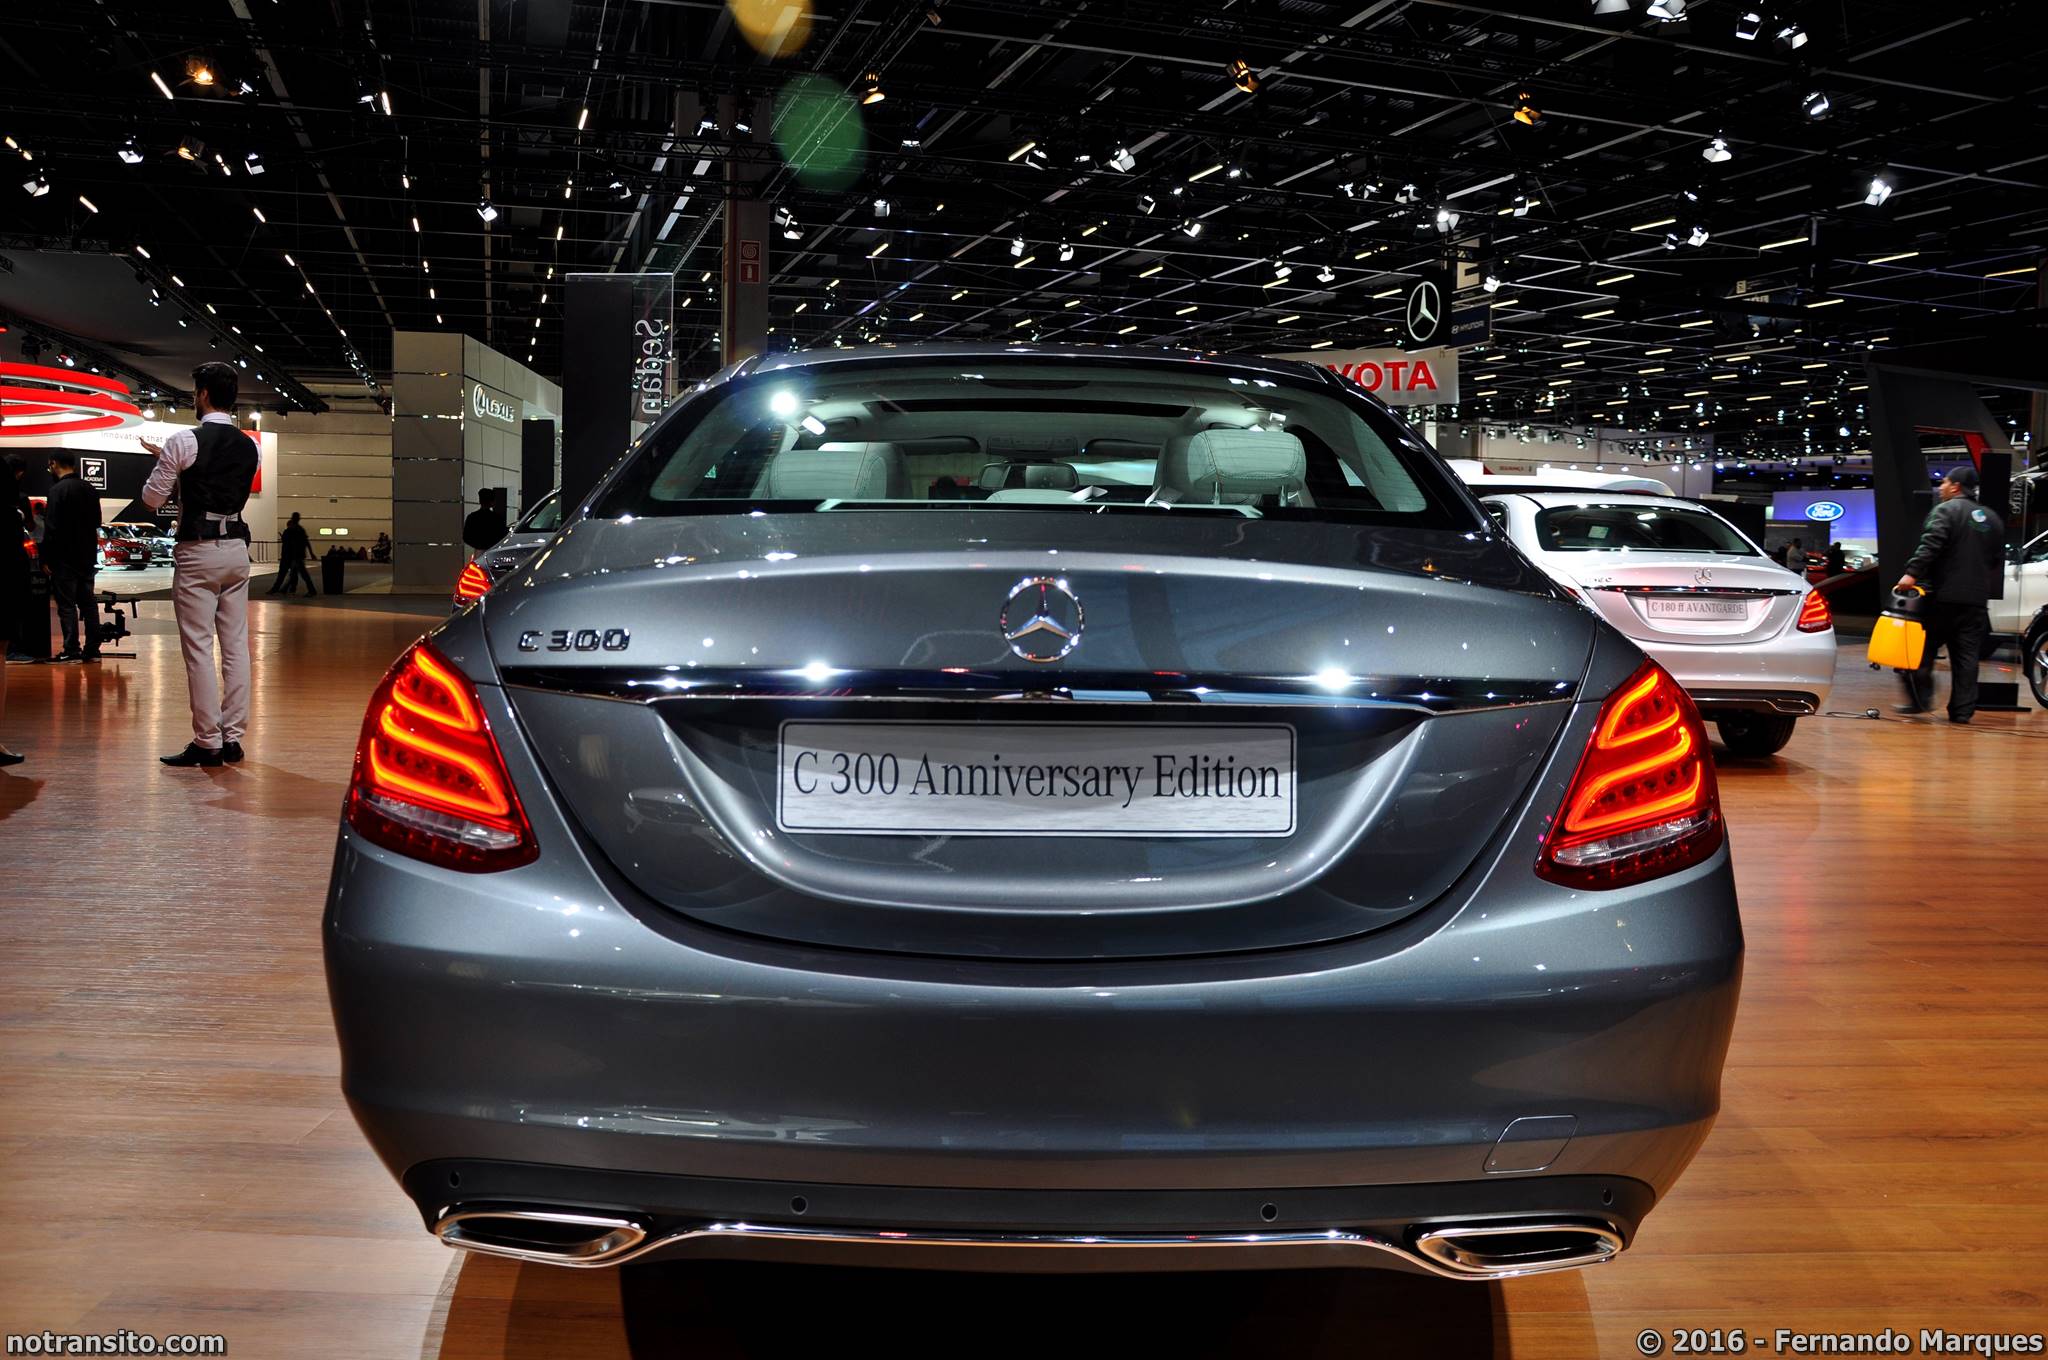 Mercedes-Benz C 300 Anniversary Edition Salão do Automóvel 2016